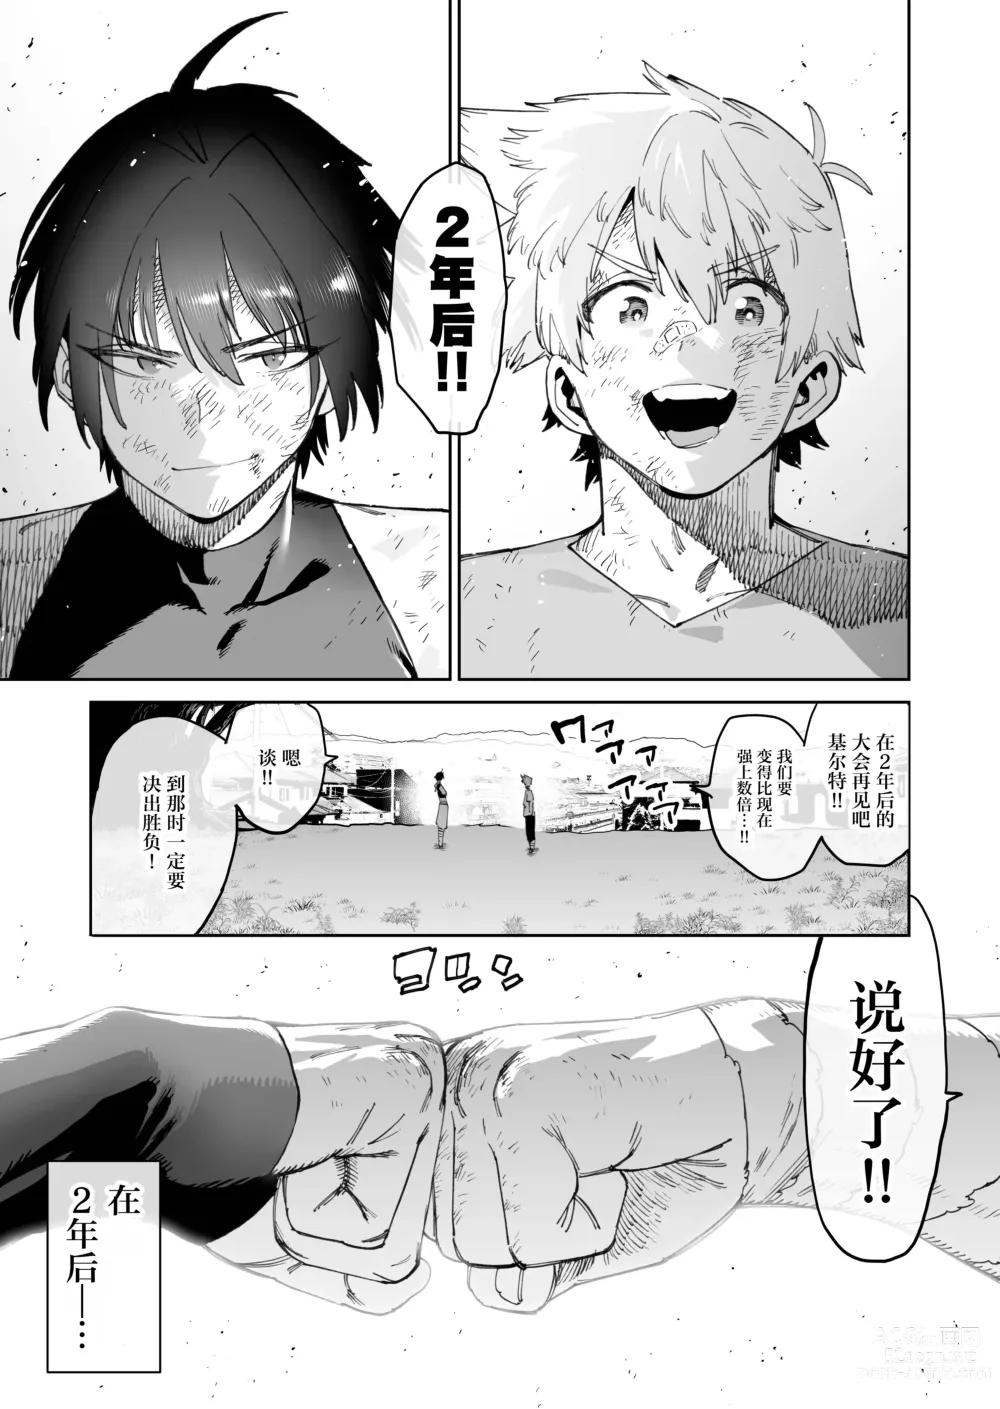 Page 4 of doujinshi 约好要变得更强大而告别的两名战友在2年后重逢时变成了母猪便器这件事